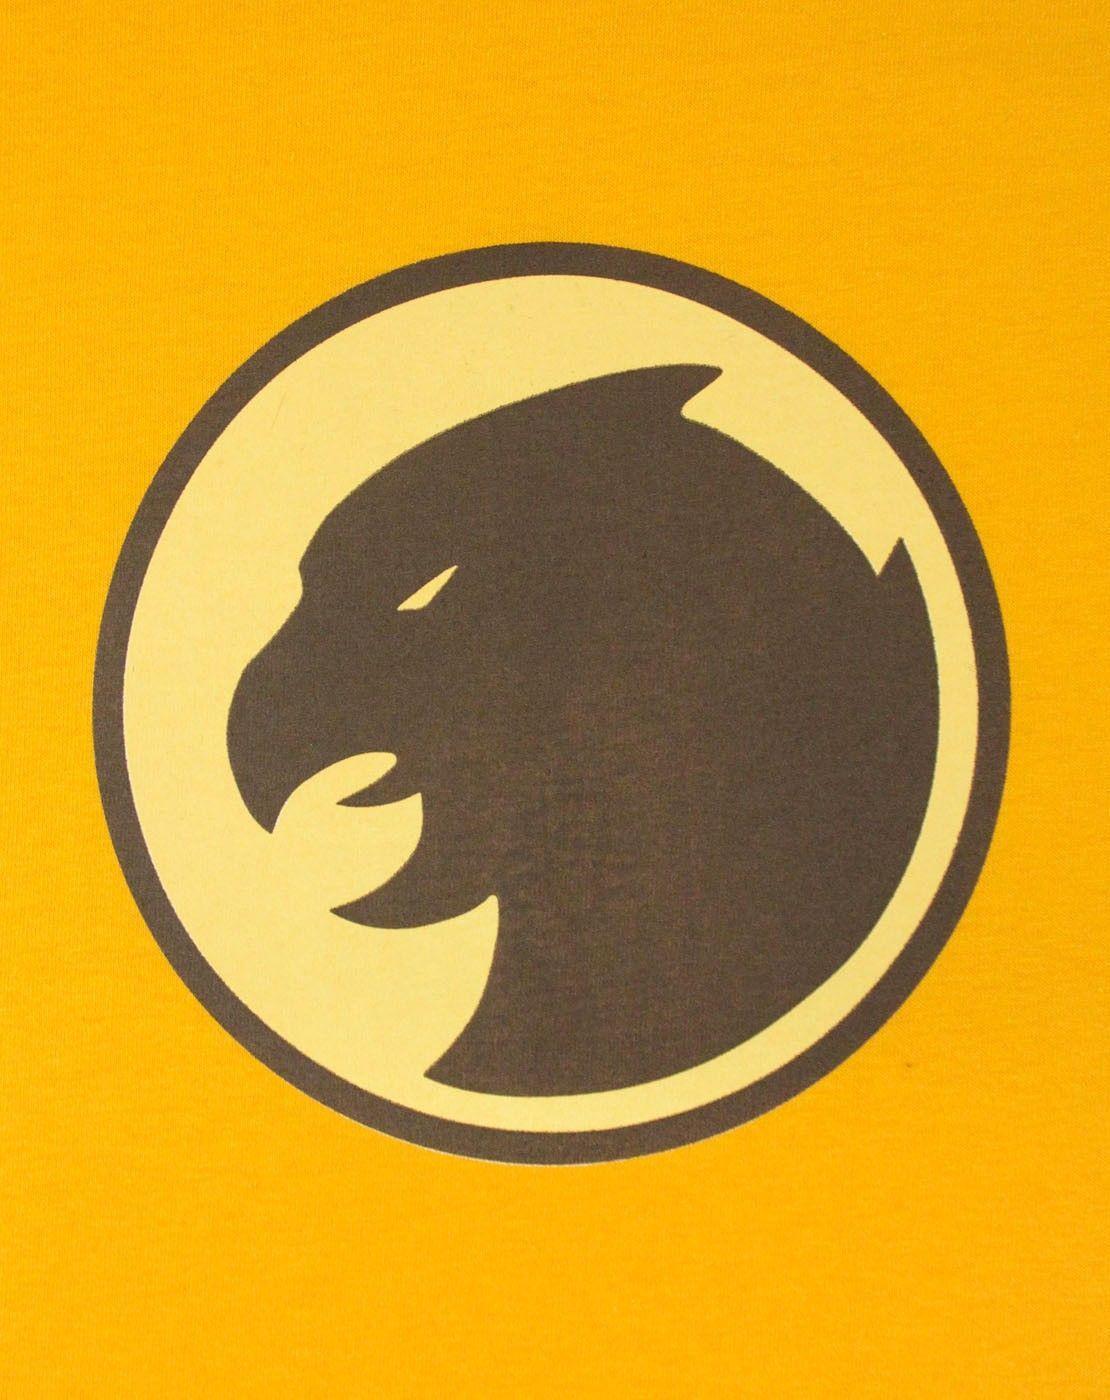 Hawkman Logo - Official Hawkman Emblem Men's T Shirt. Cosplay